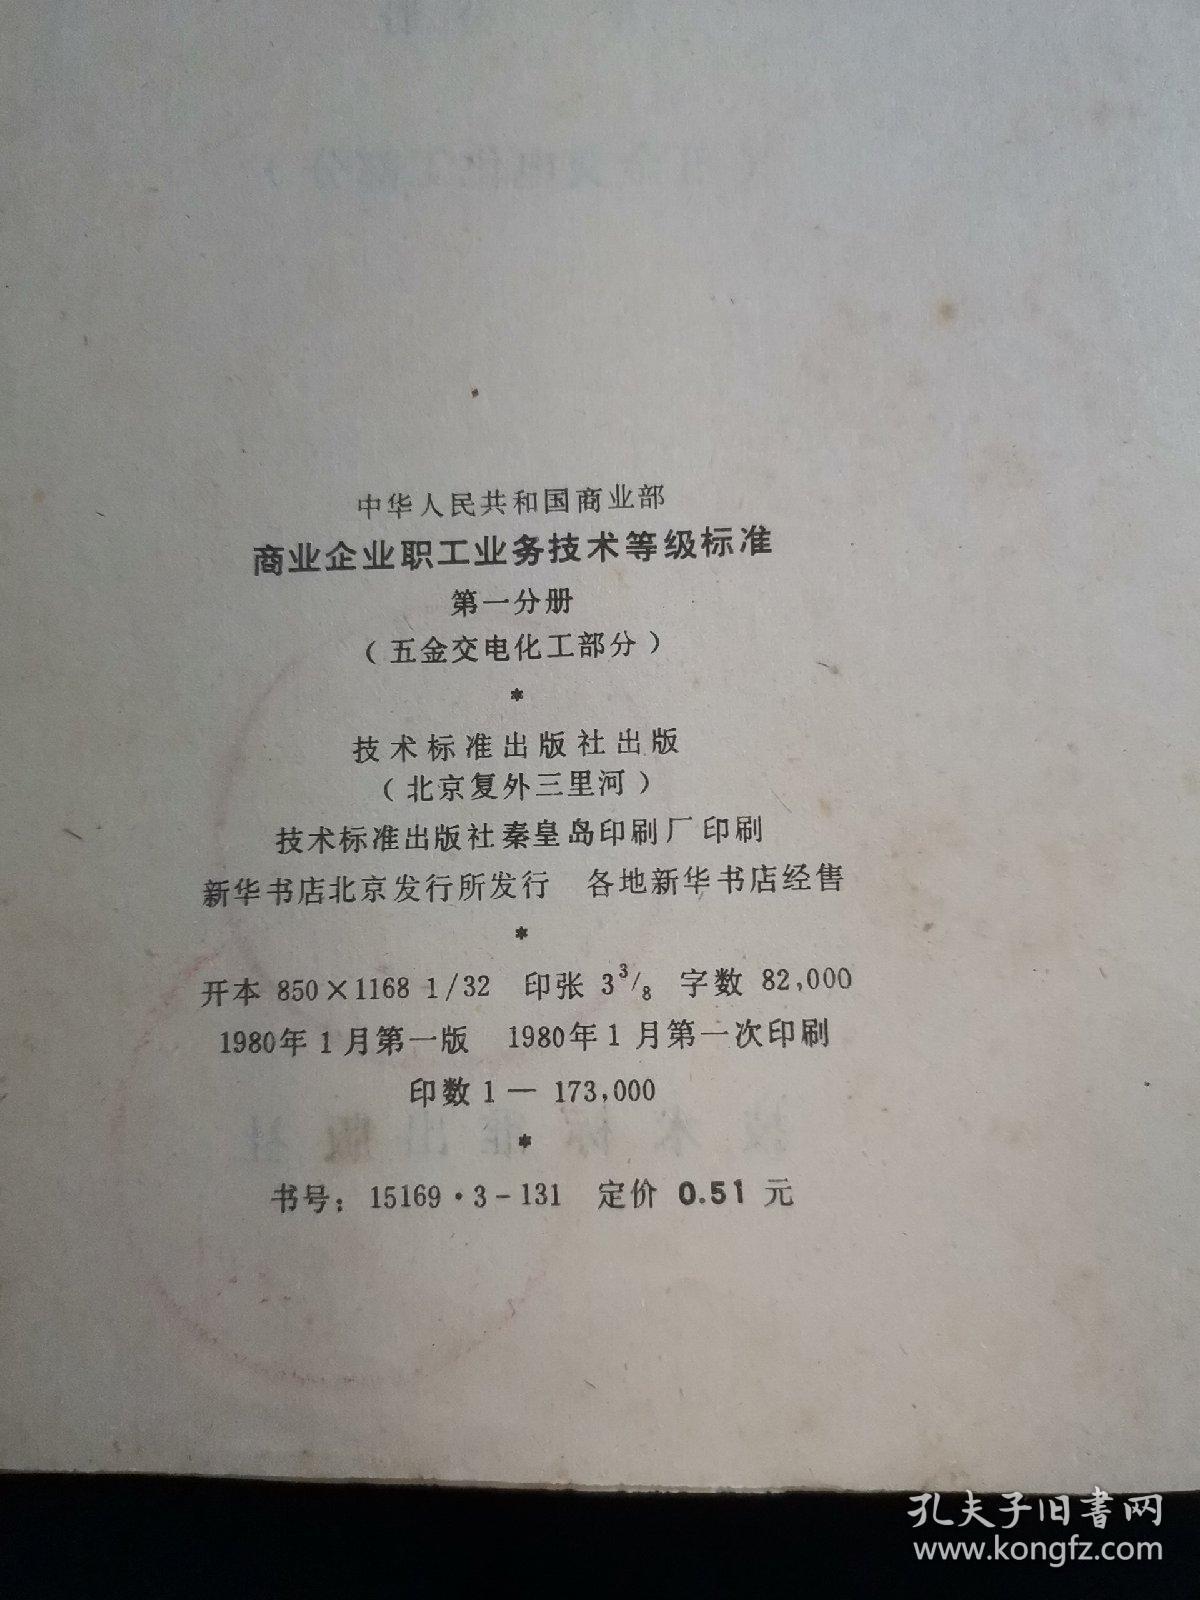 中华人民共和国商业部商业企业职工业务技术等级标准.第五分册.糖业、烟酒、蔬菜部分